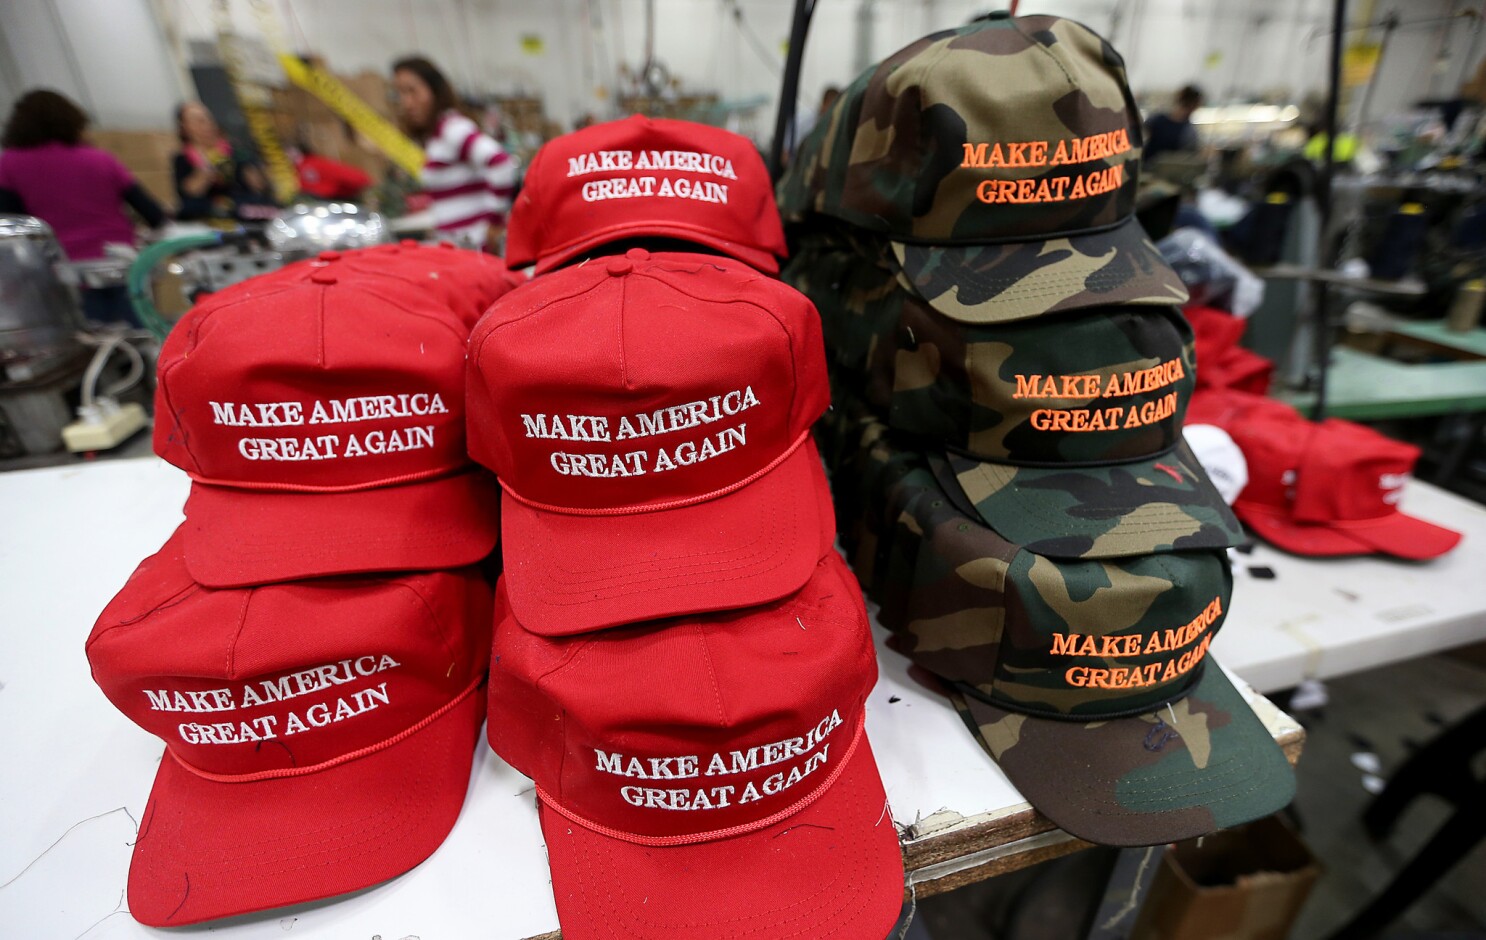 AUTHENTIC original Cali Fame Donald Trump make America great again MAGA cap hat 